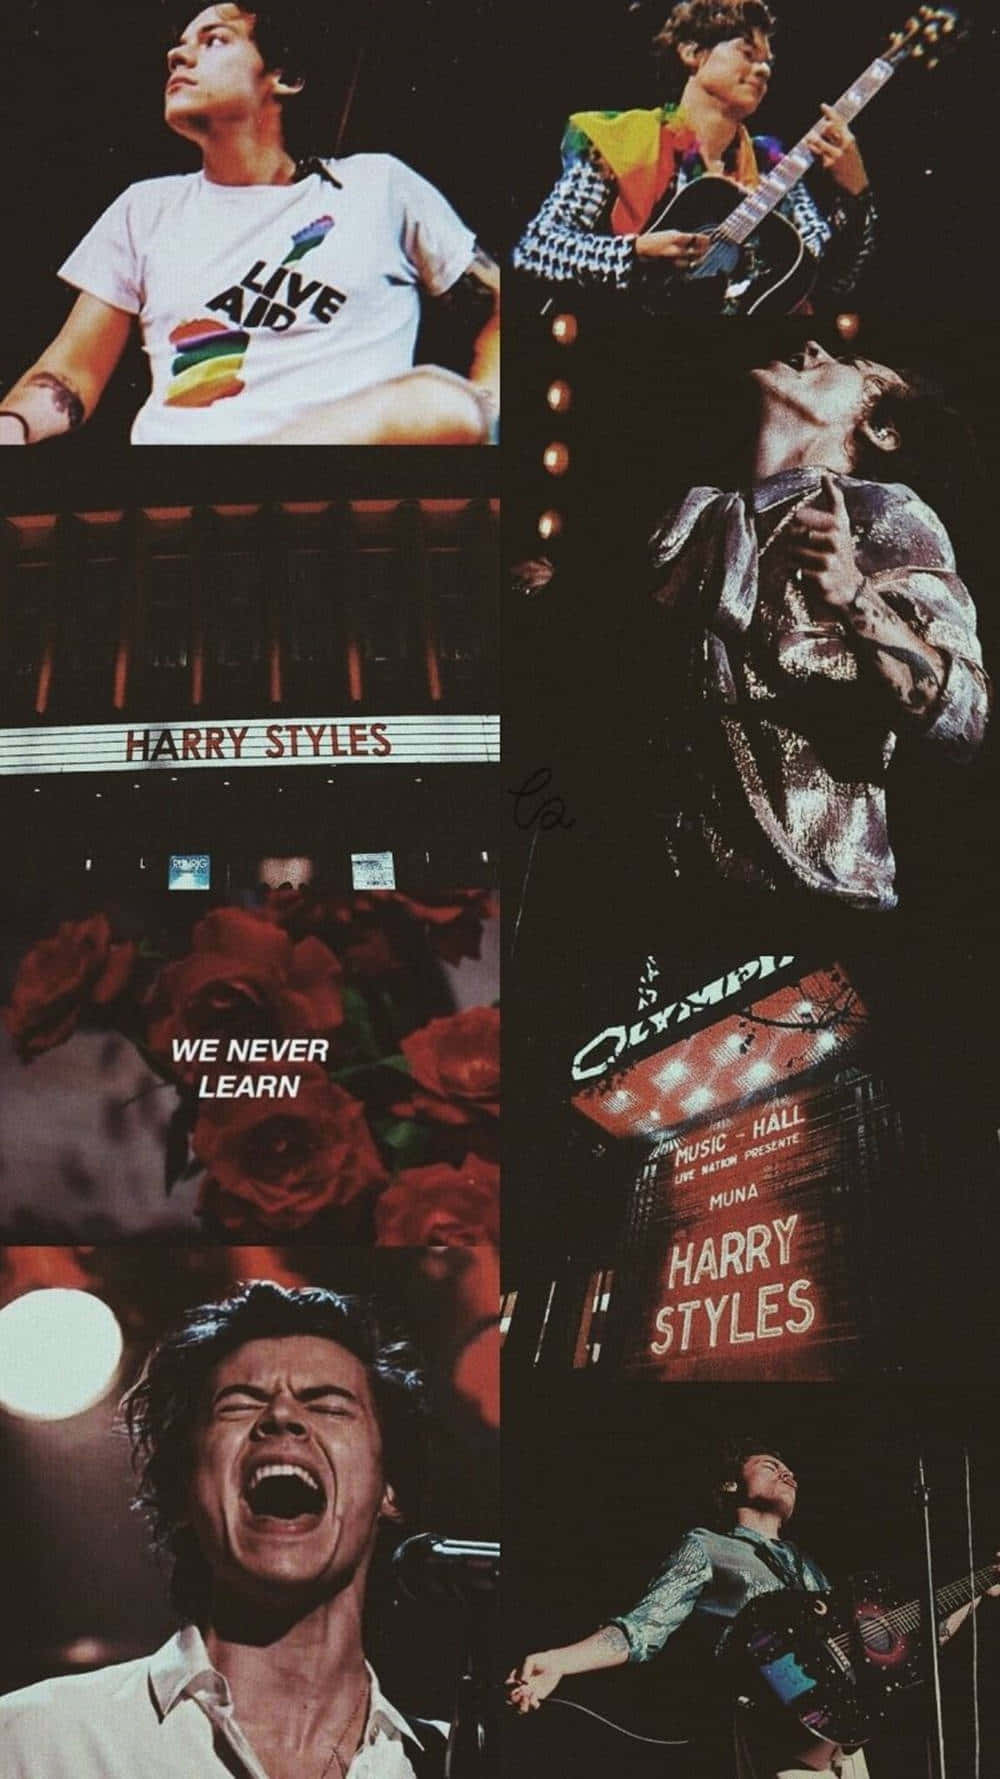 Tauchensie Ein In Die Musik Von Harry Styles In Dieser Atemberaubenden Collage! Wallpaper